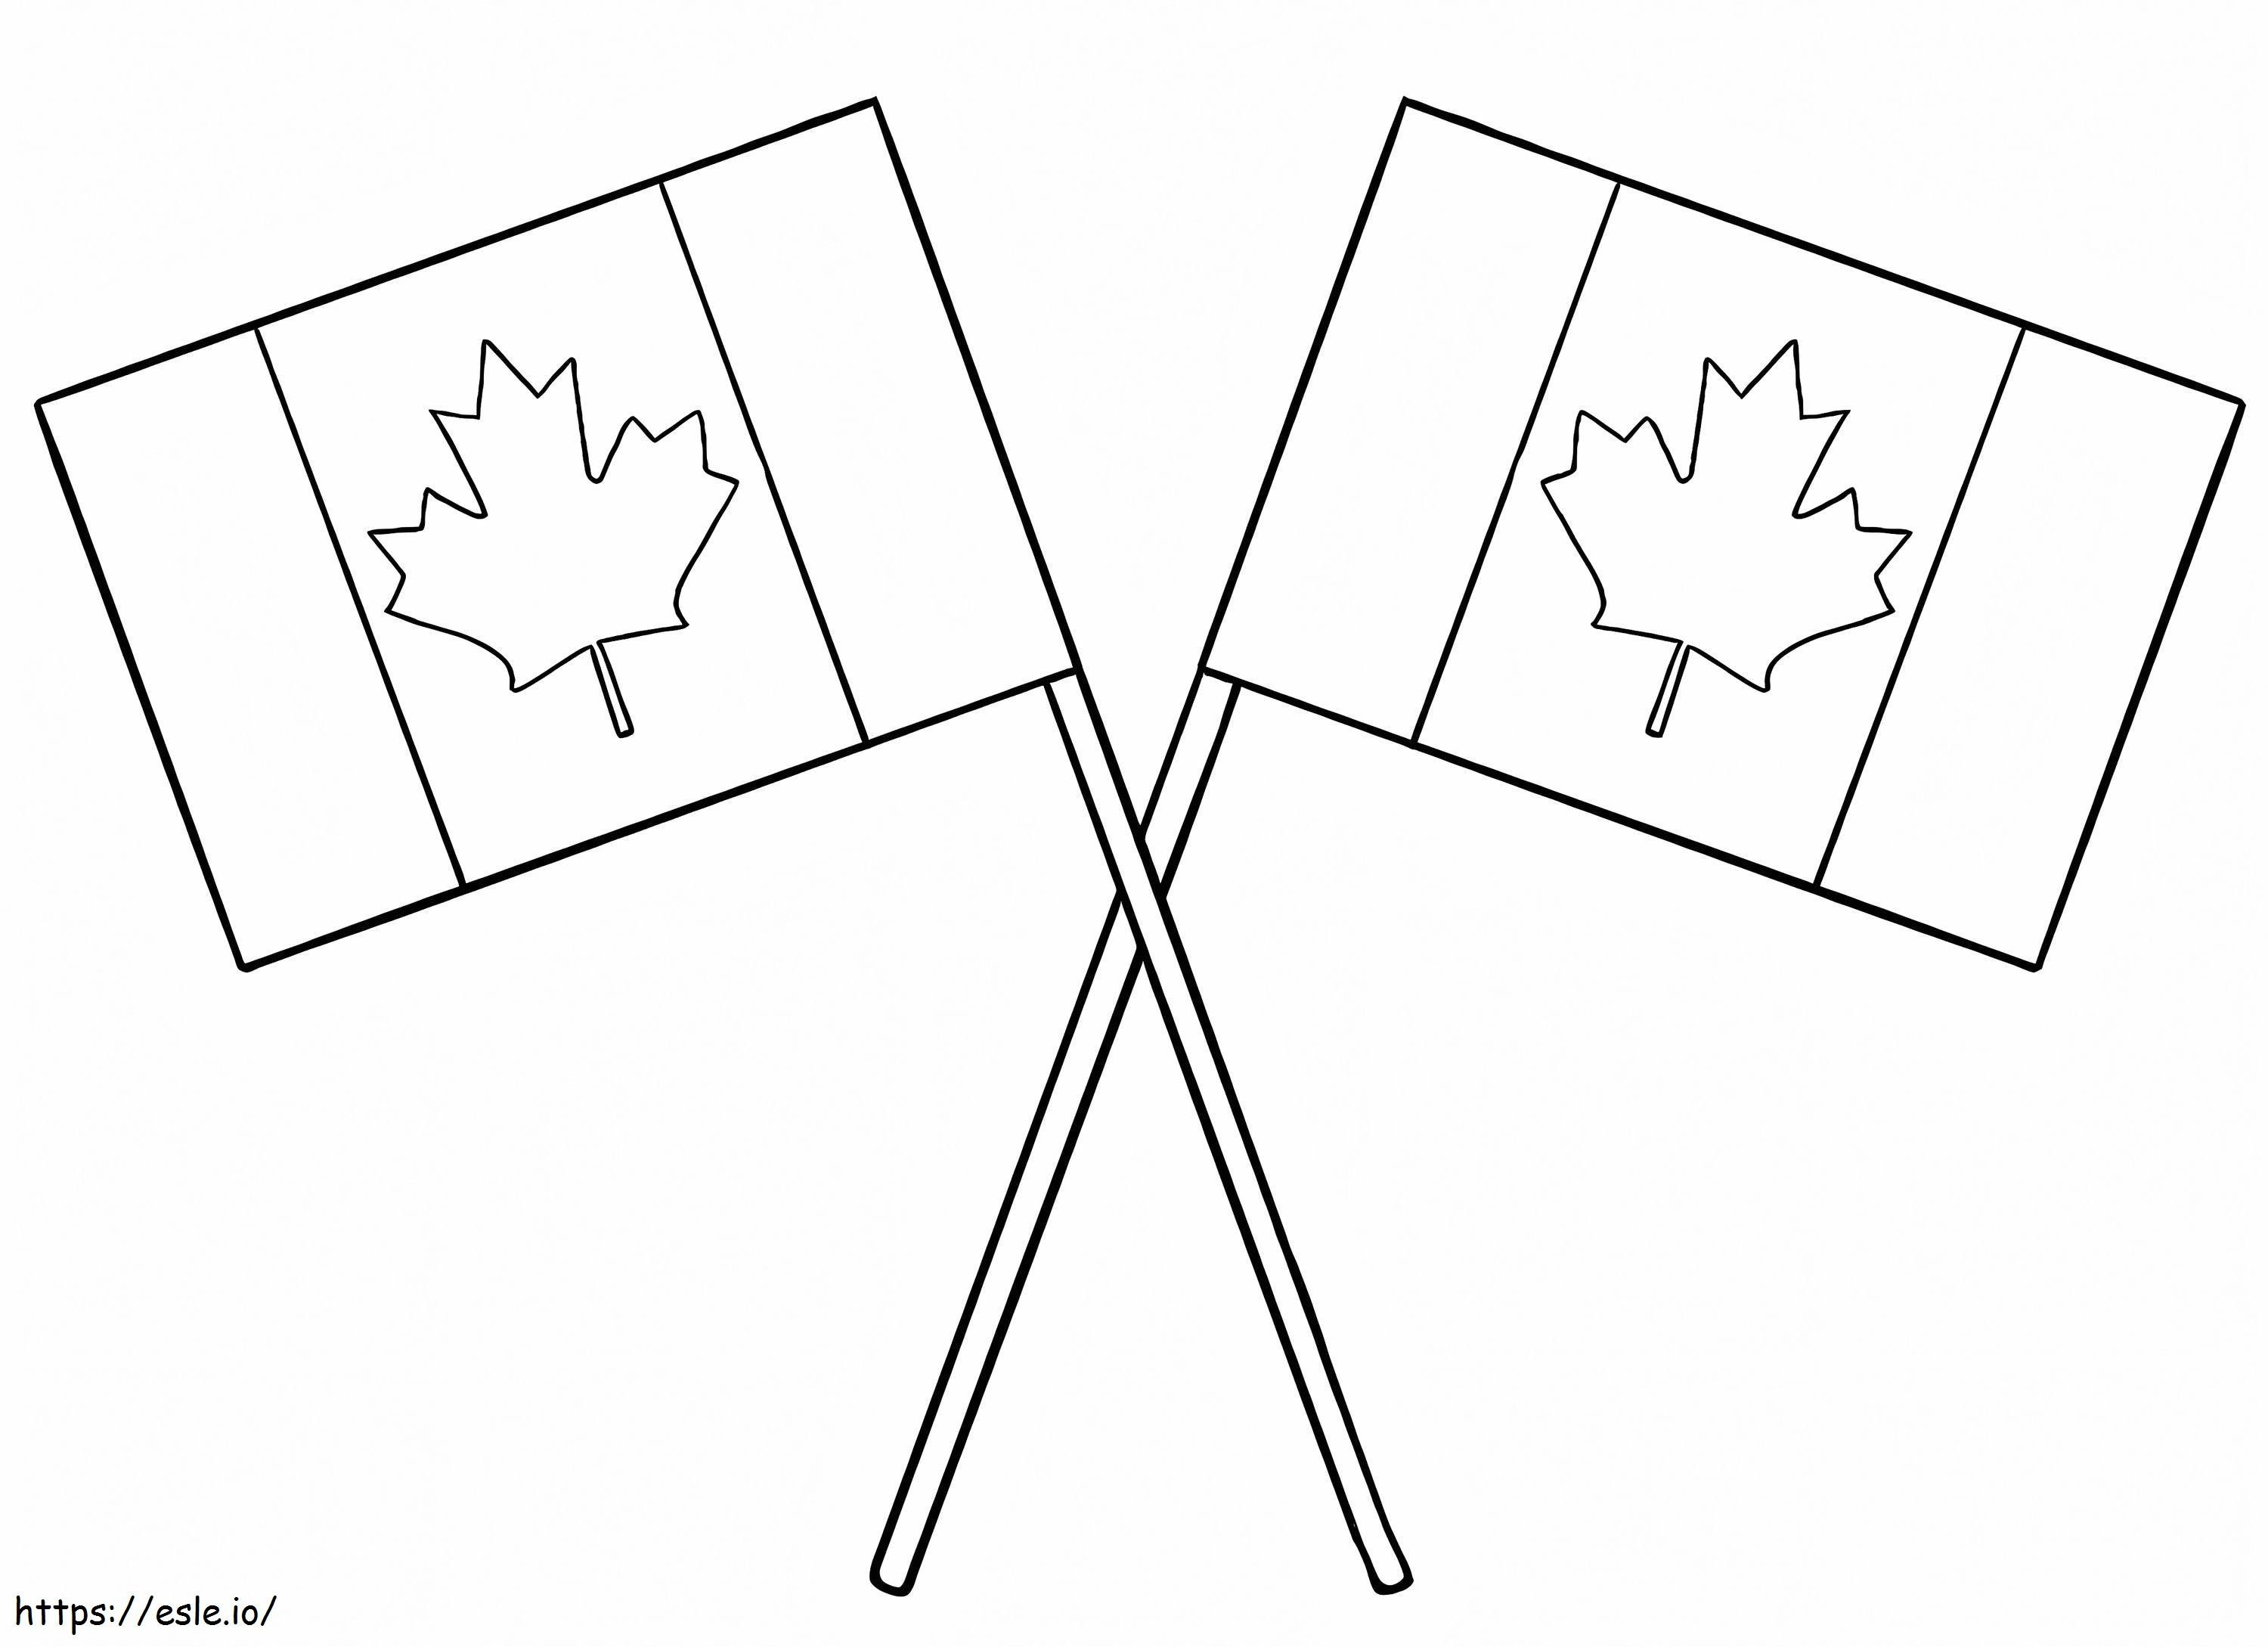 Bandiera del Canada 2 da colorare